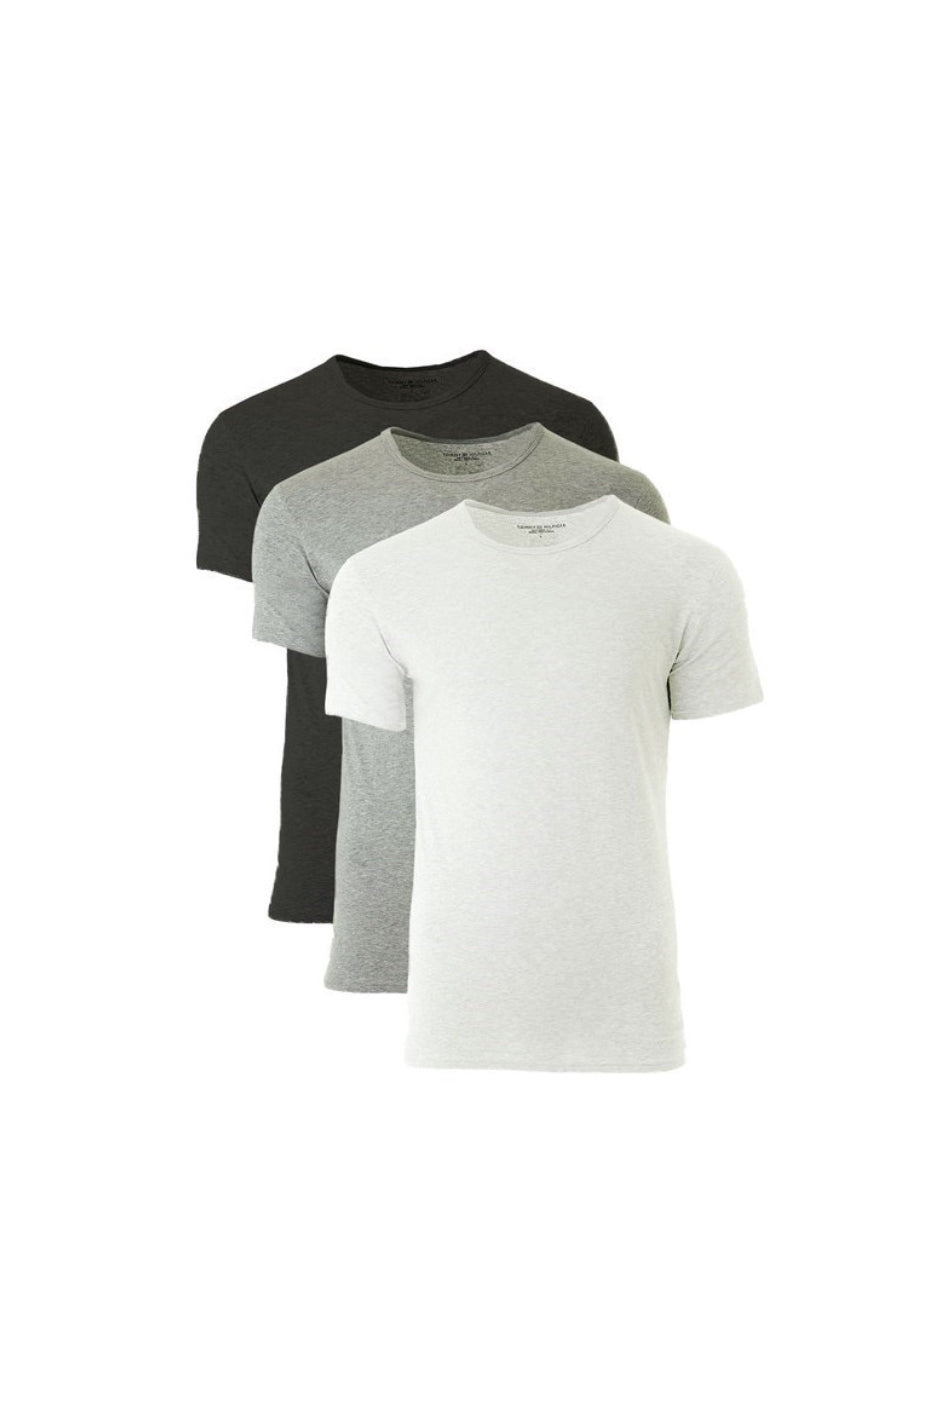 Tommy Hilfiger Men's T-Shirt 3 Pack